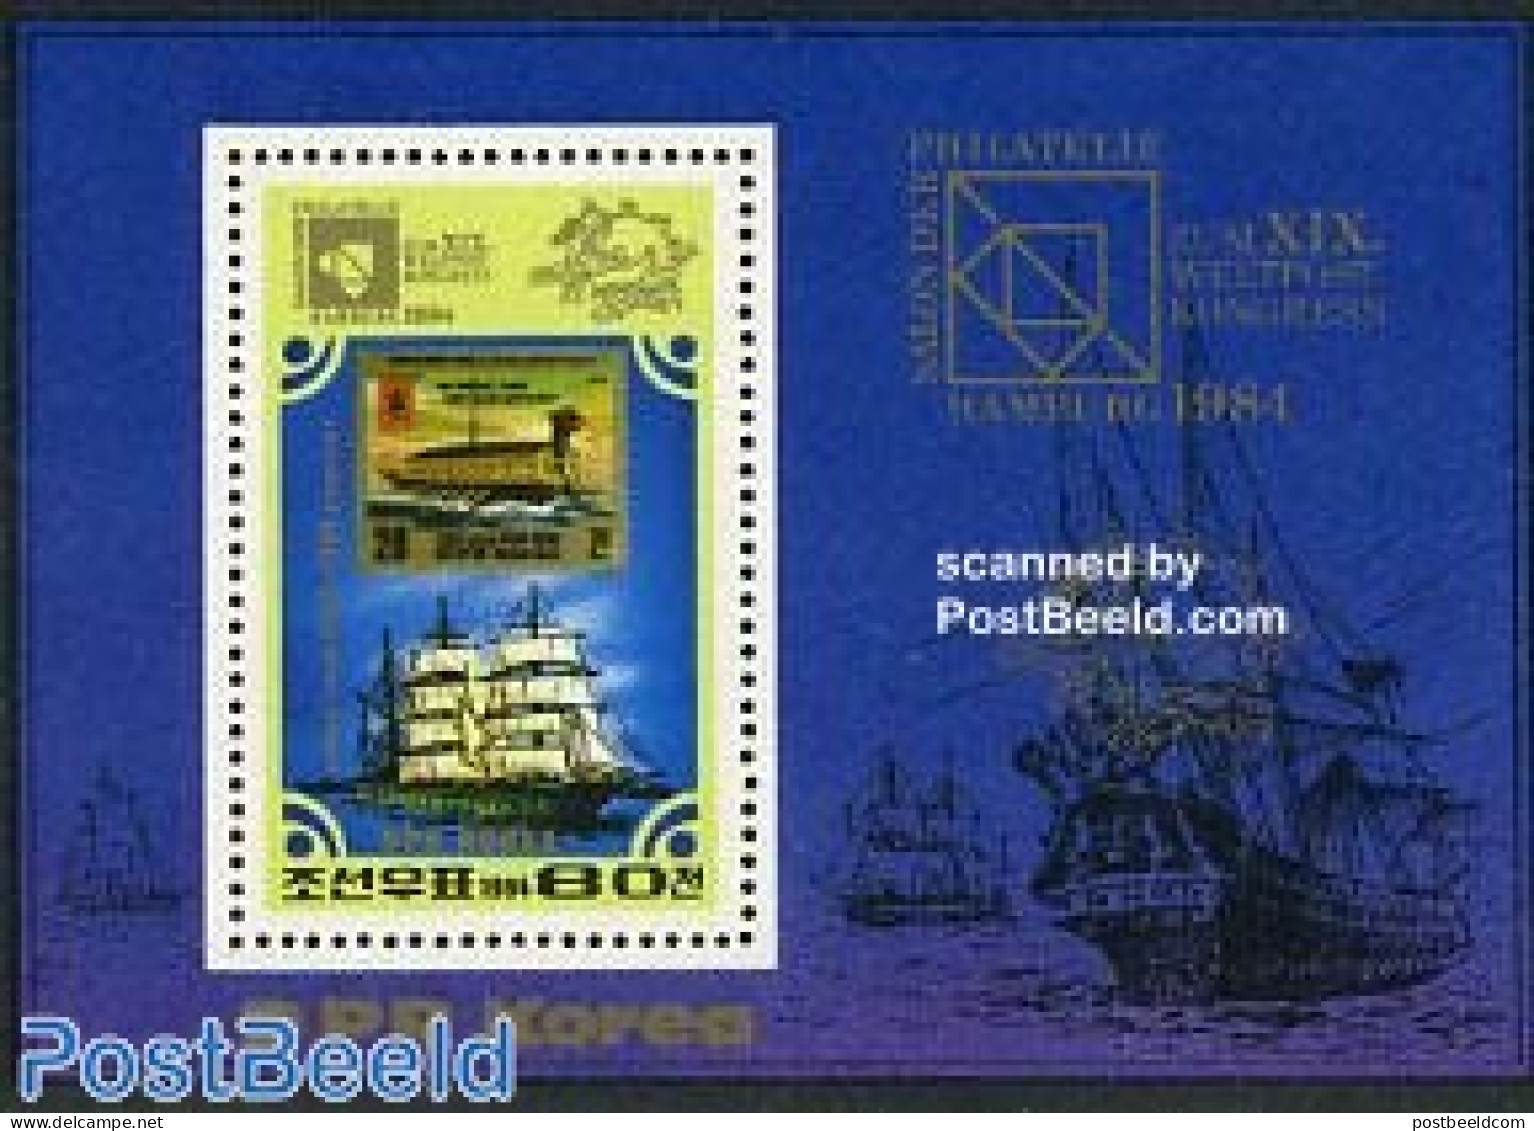 Korea, North 1984 UPU Congress Hamburg S/s, Mint NH, Transport - Stamps On Stamps - U.P.U. - Ships And Boats - Briefmarken Auf Briefmarken